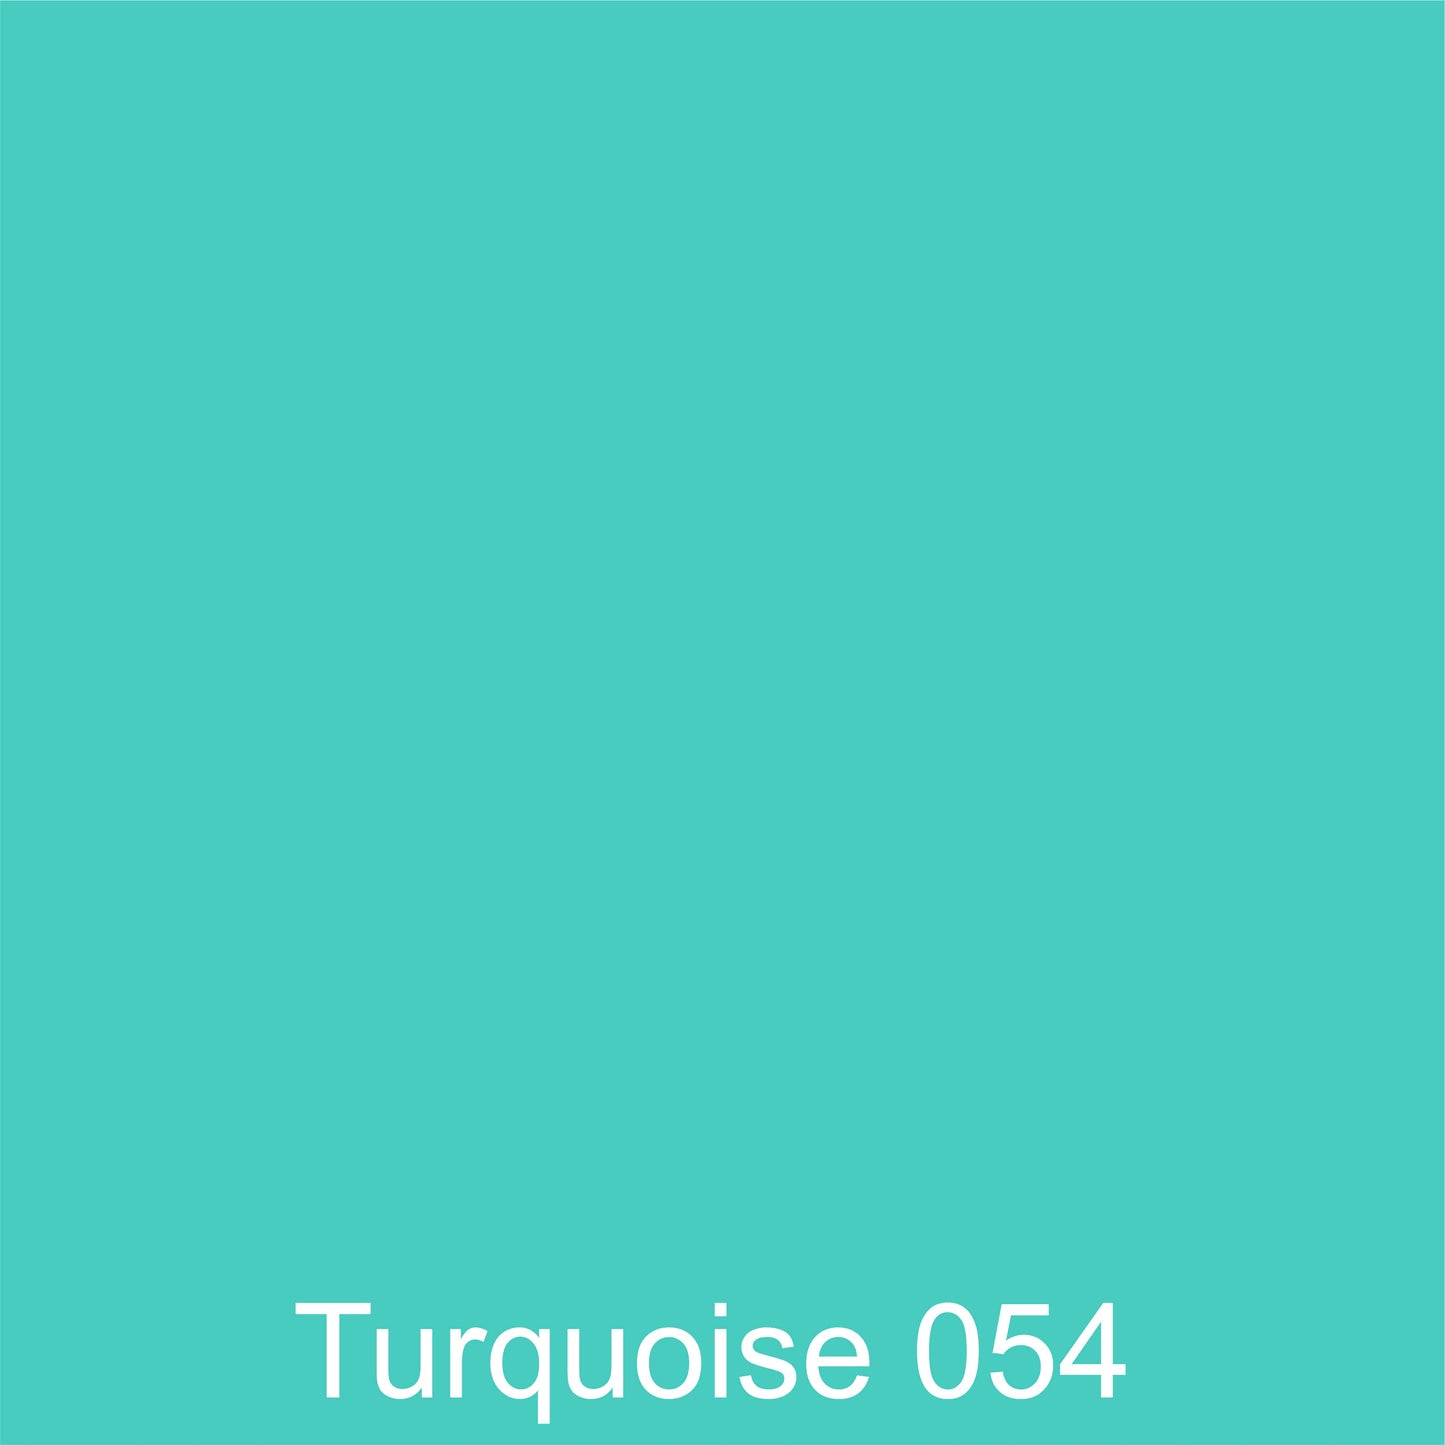 Oracal 651 Matt :- Turquoise - 054